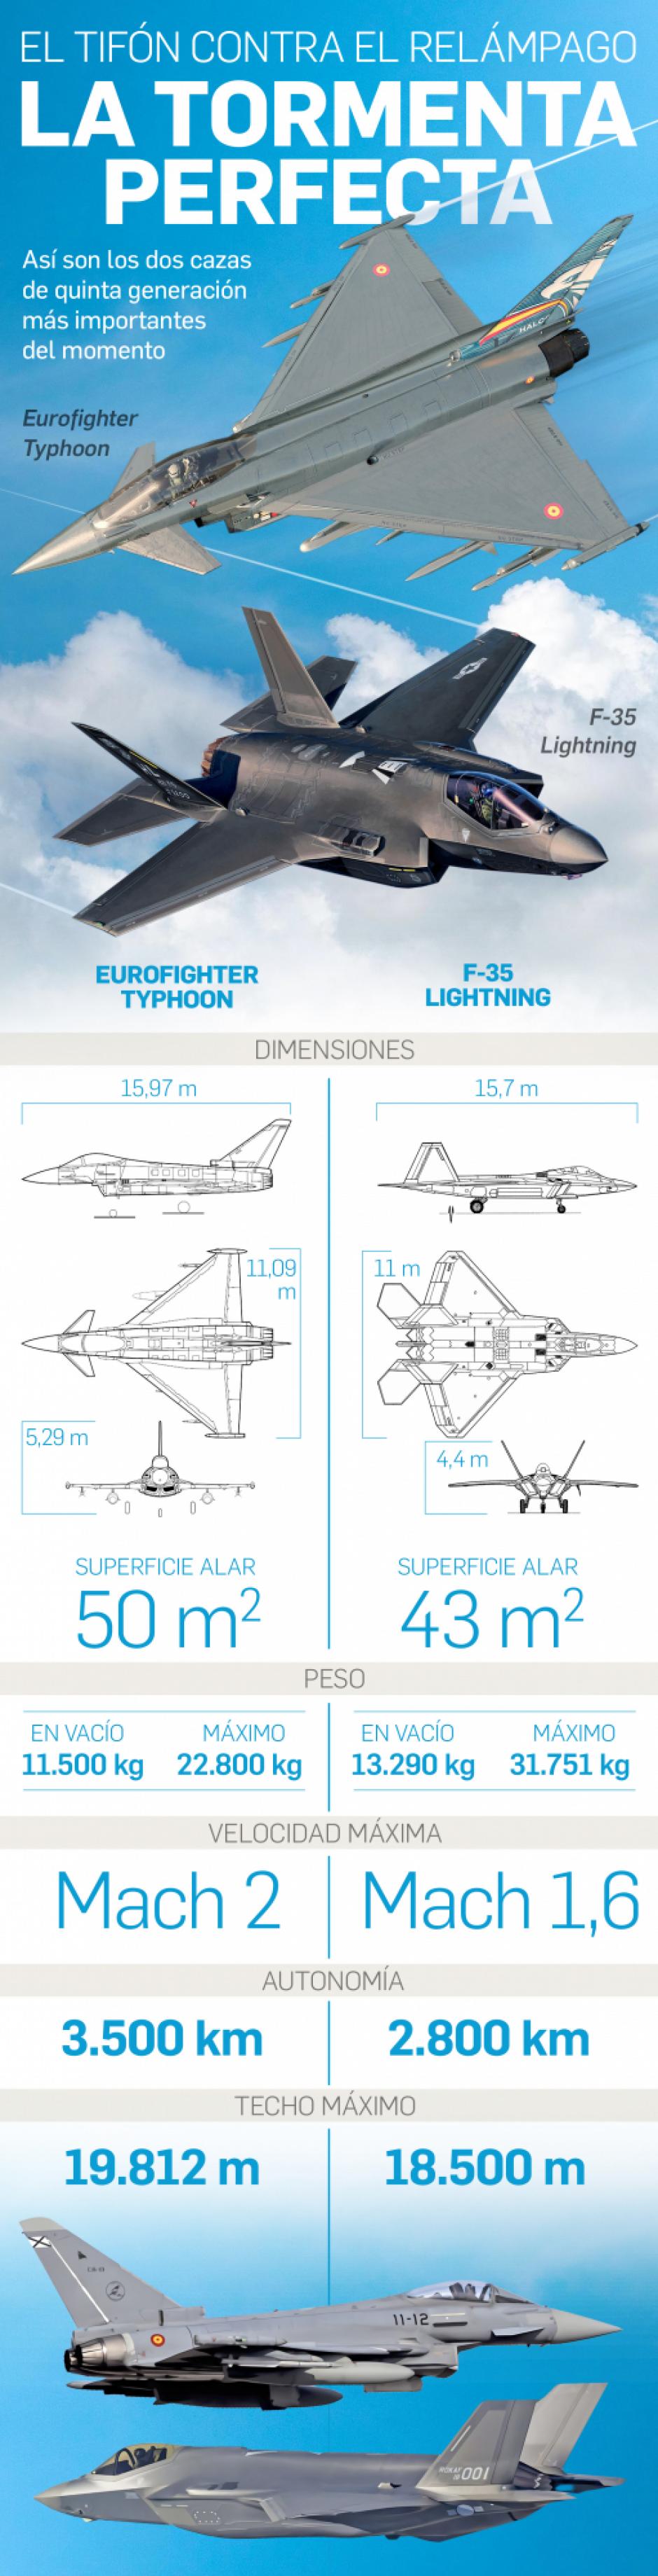 Comparativa entre el Eurofighter y el F-35